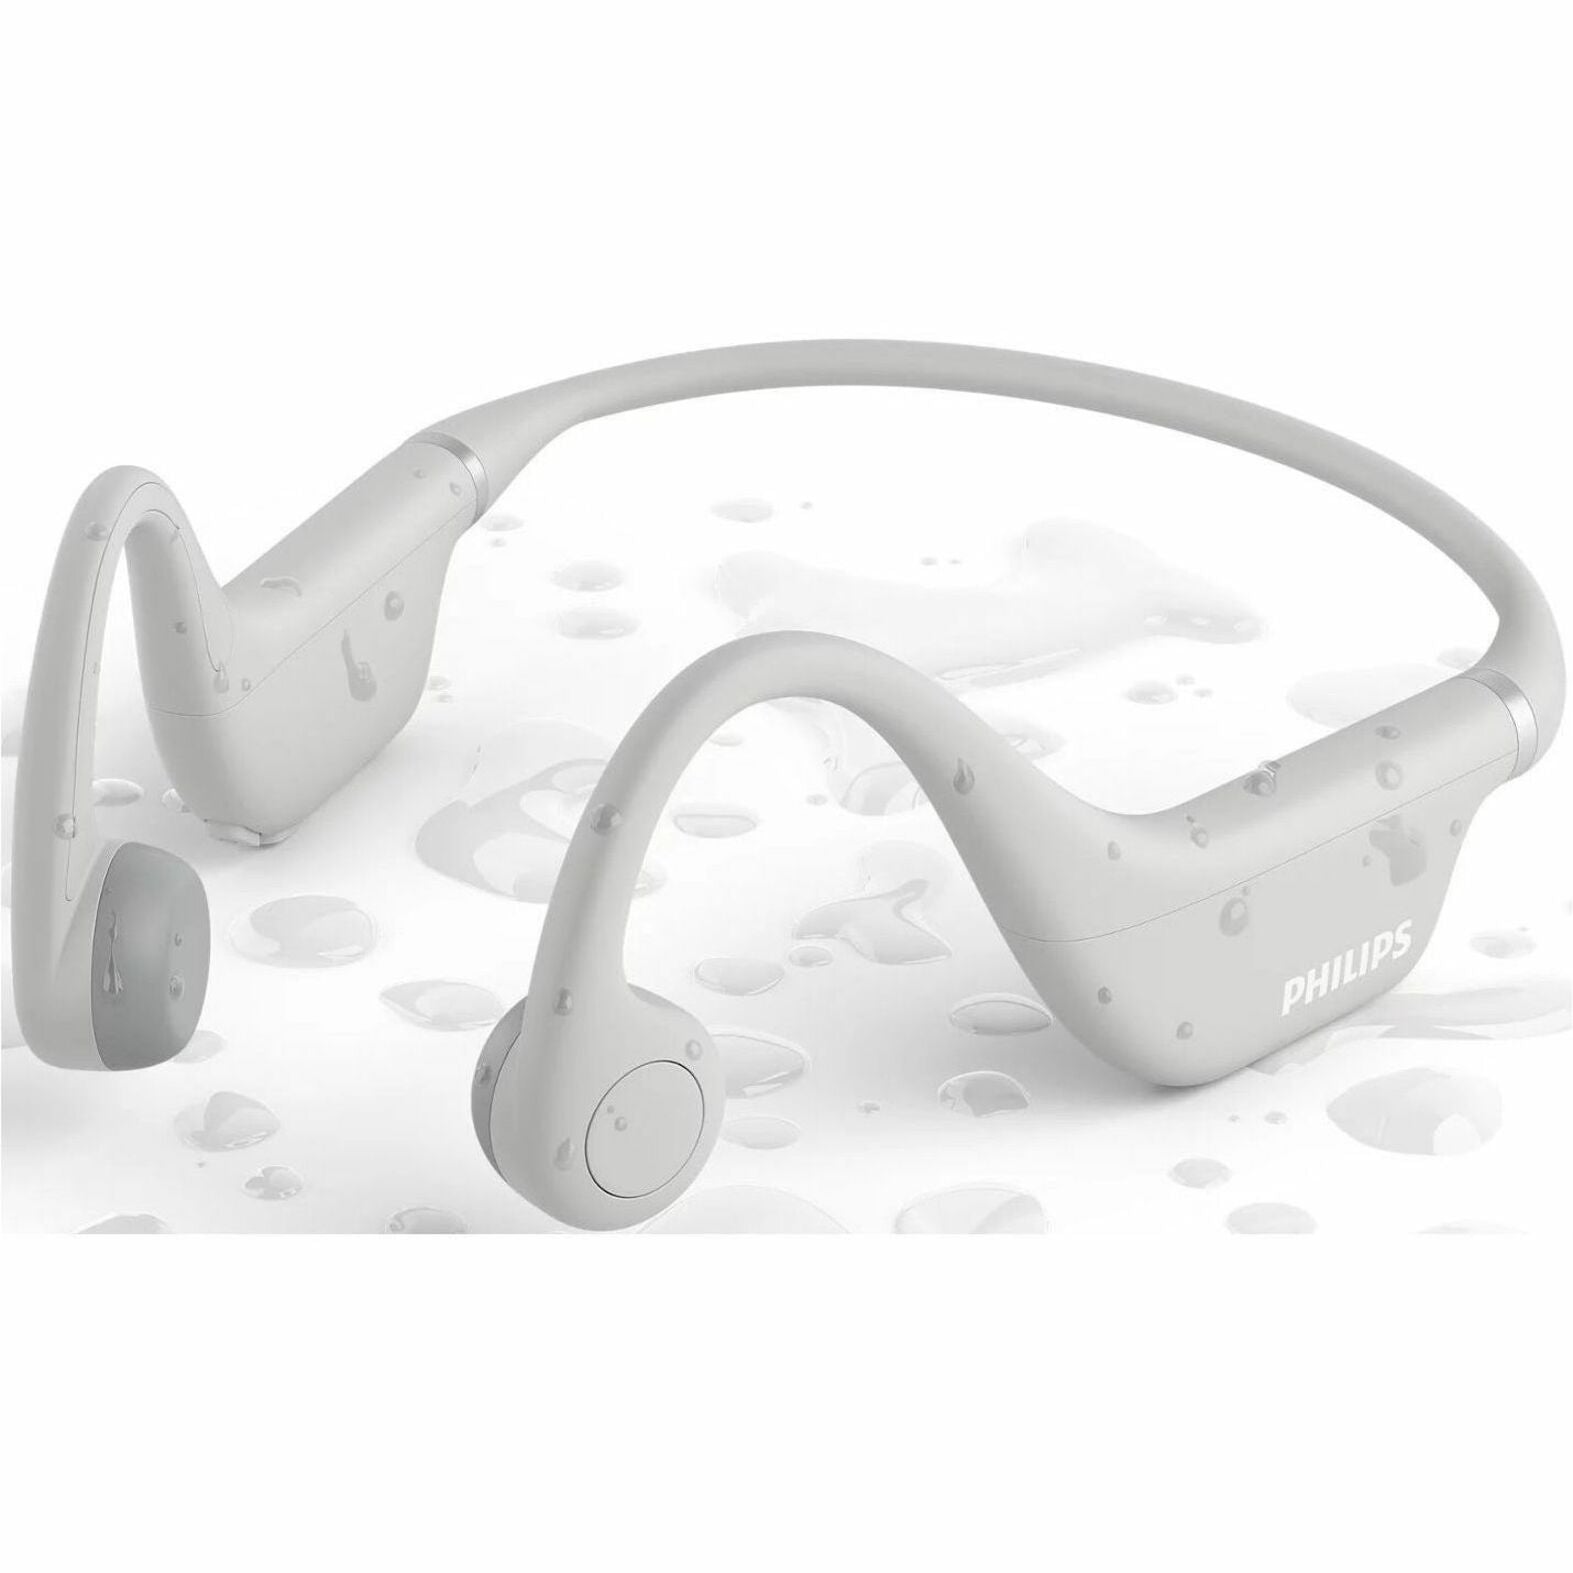 Philips Kids' Open-ear Wireless Headphone (TAK4607GY/00)